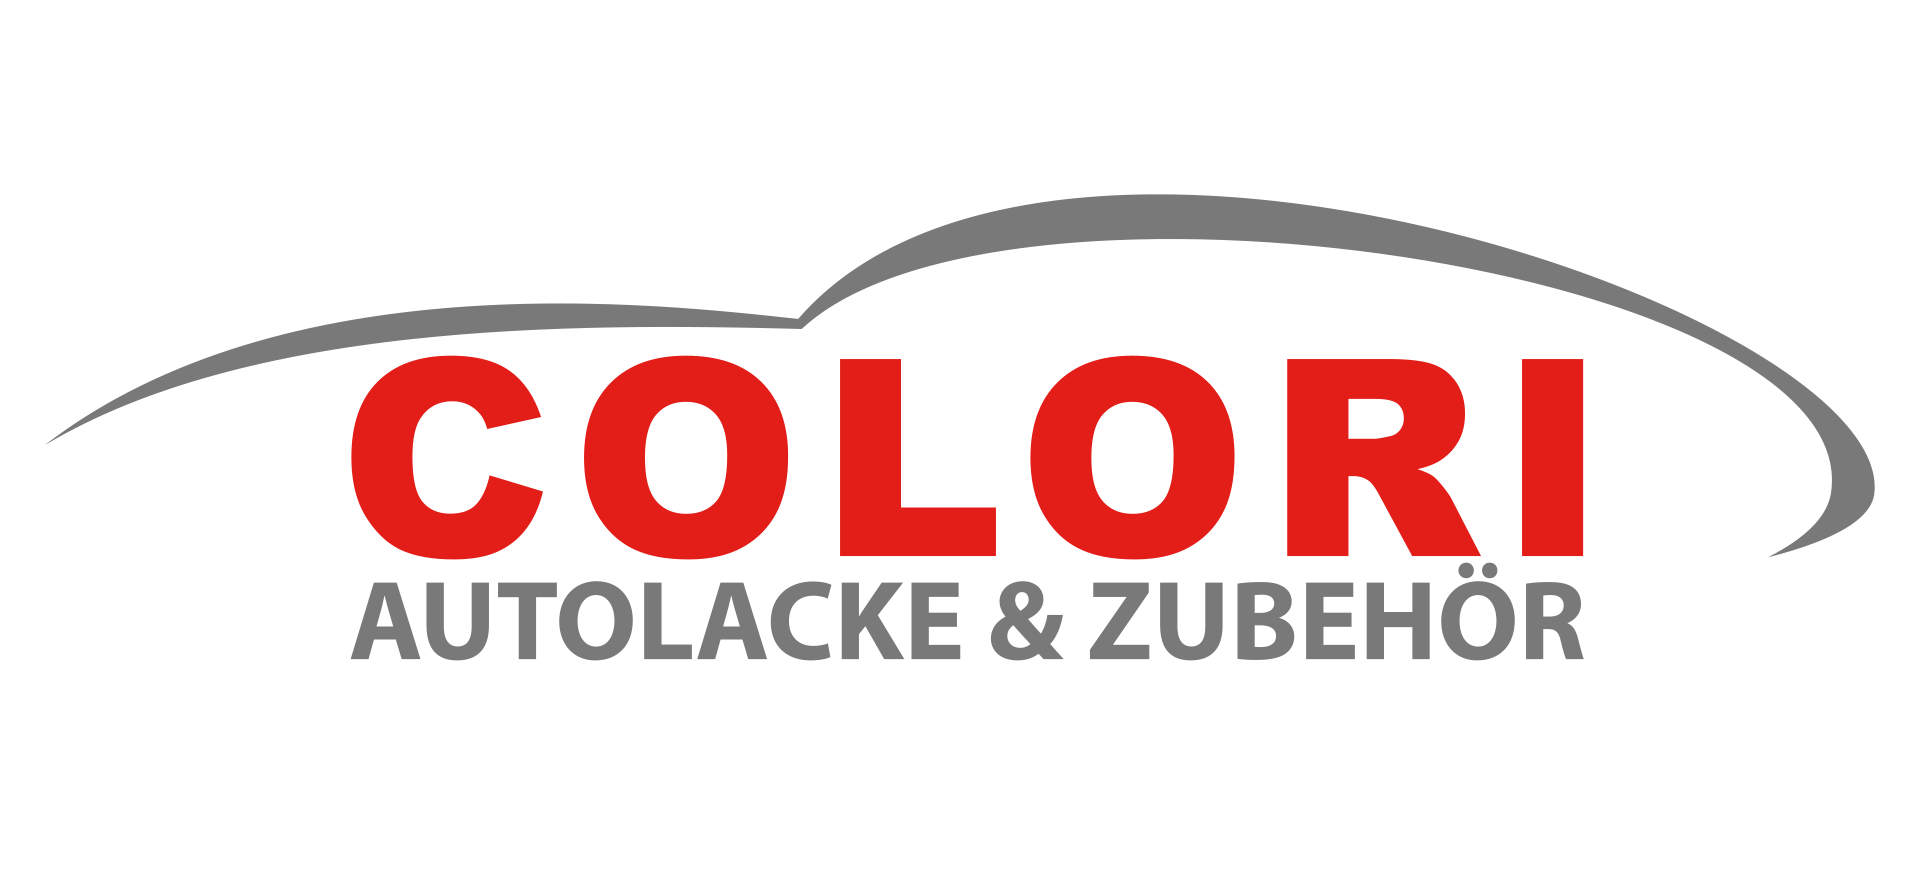 Colori Autolacke&Zubehör